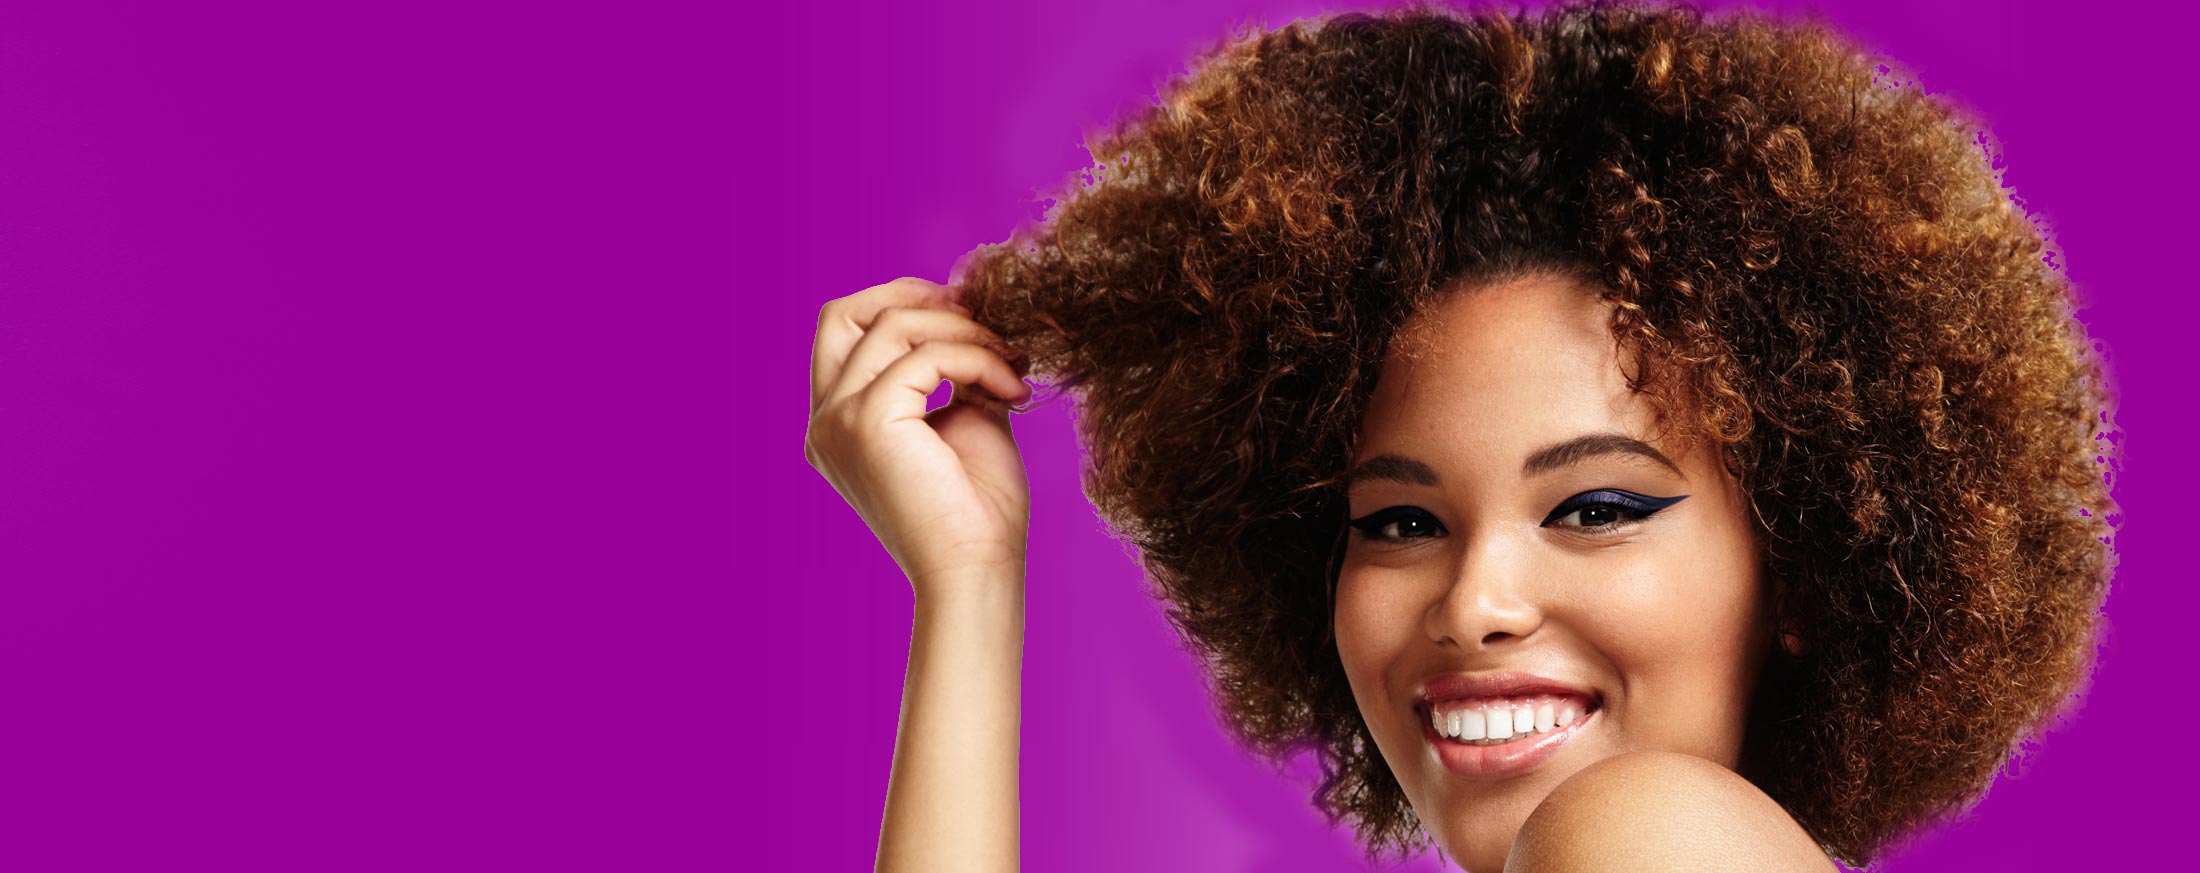 Salon Efficacy Hair Salon Hair Care Curly Hair Styling